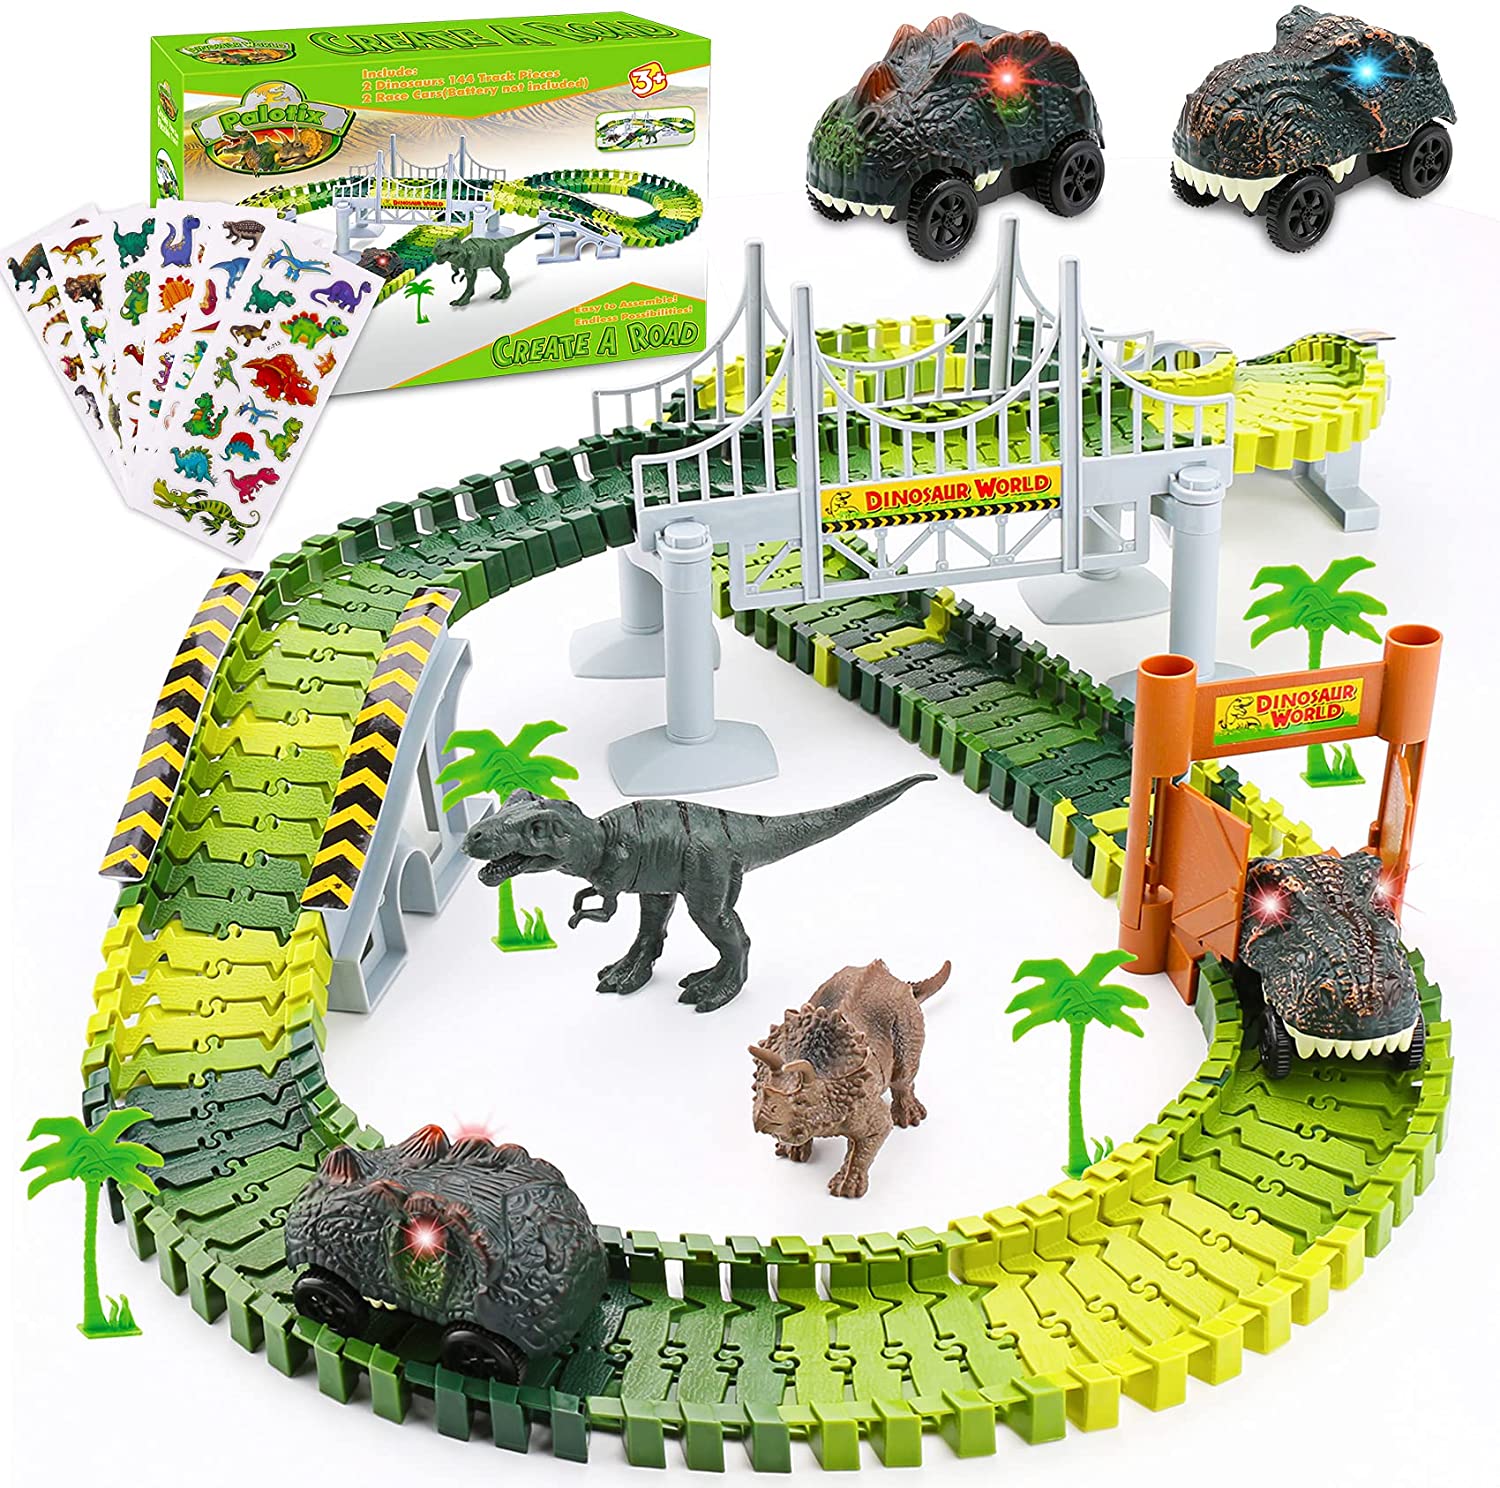 Palotix Kids Toys Train Dinosaur